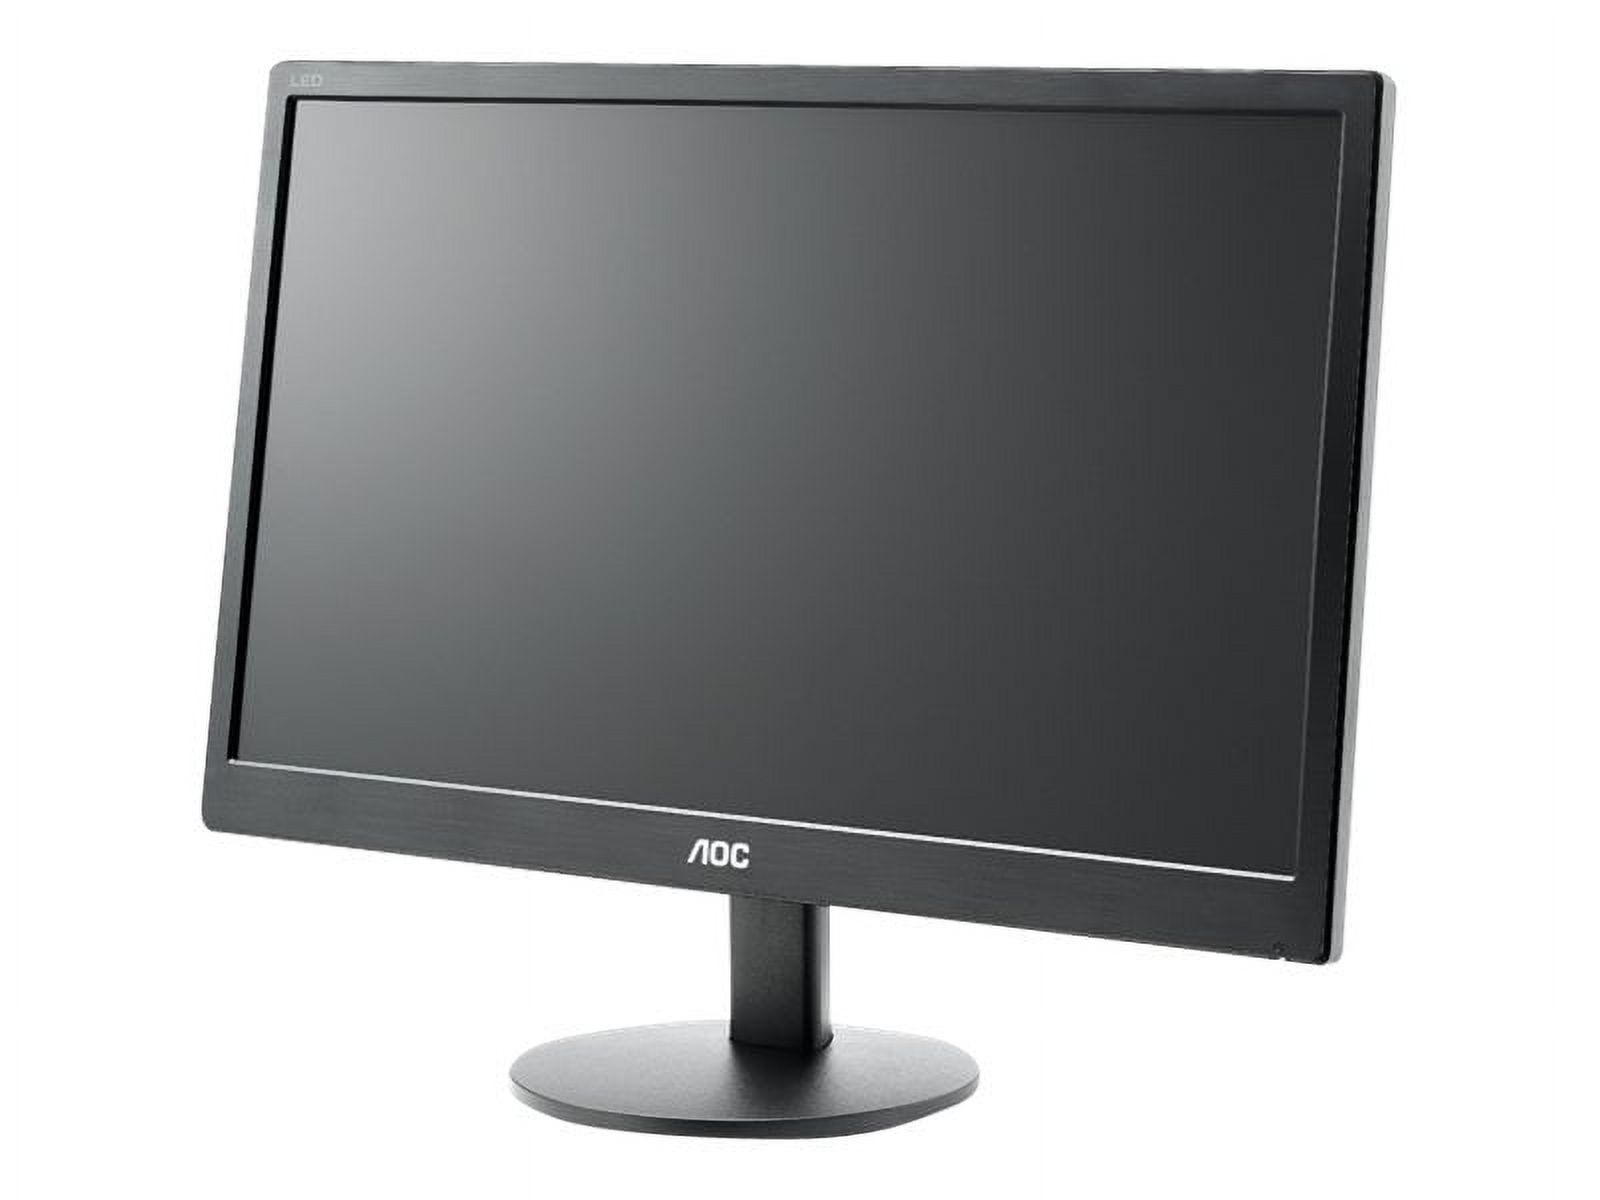 AOC E970SWN - LED monitor - 18.5" - 1366 x 768 @ 60 Hz - TN - 200 cd/m������ - 700:1 - 5 ms - VGA - black - image 1 of 6